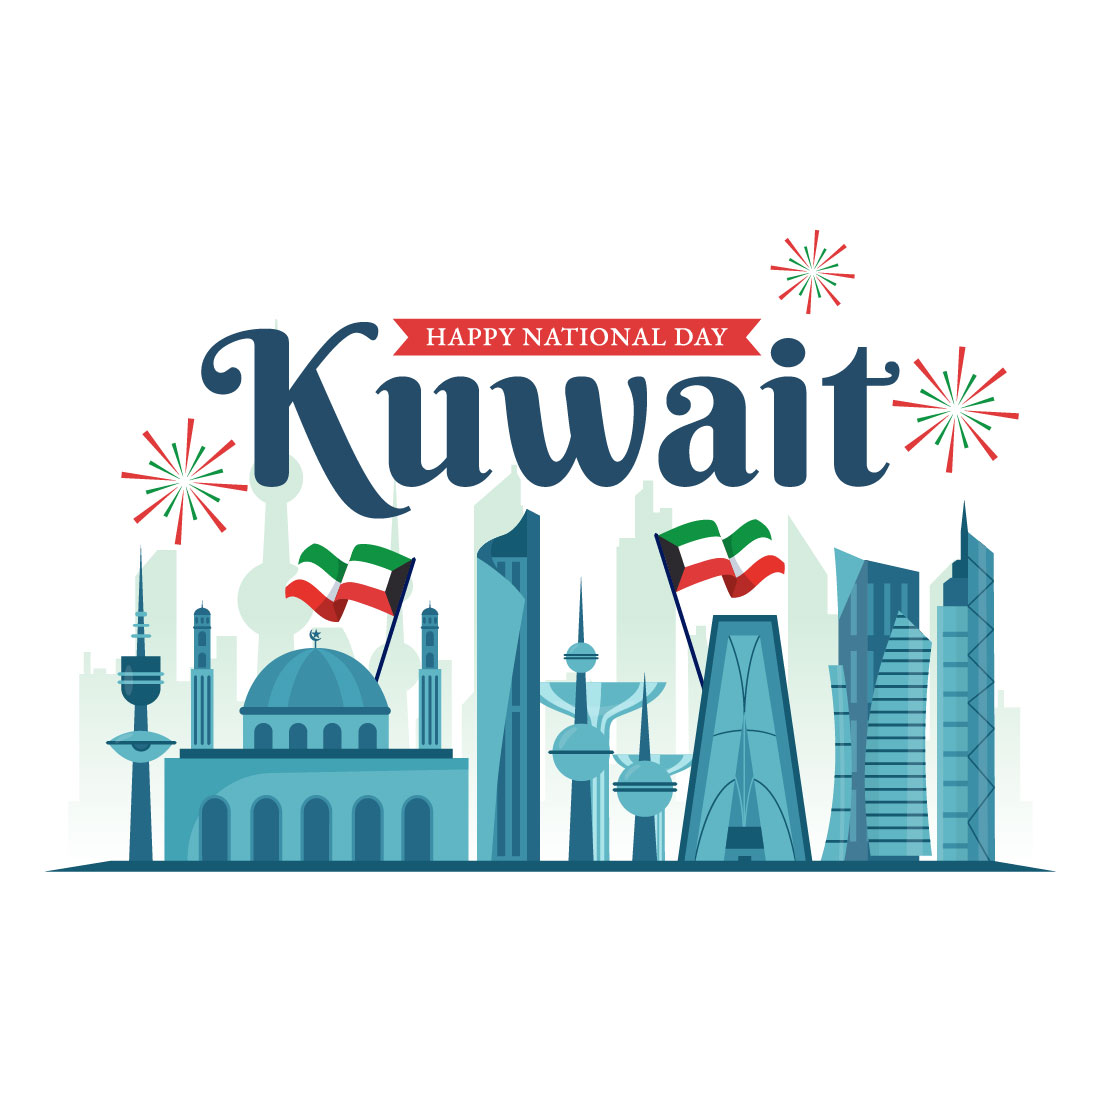 12 National Kuwait Day Illustration cover image.